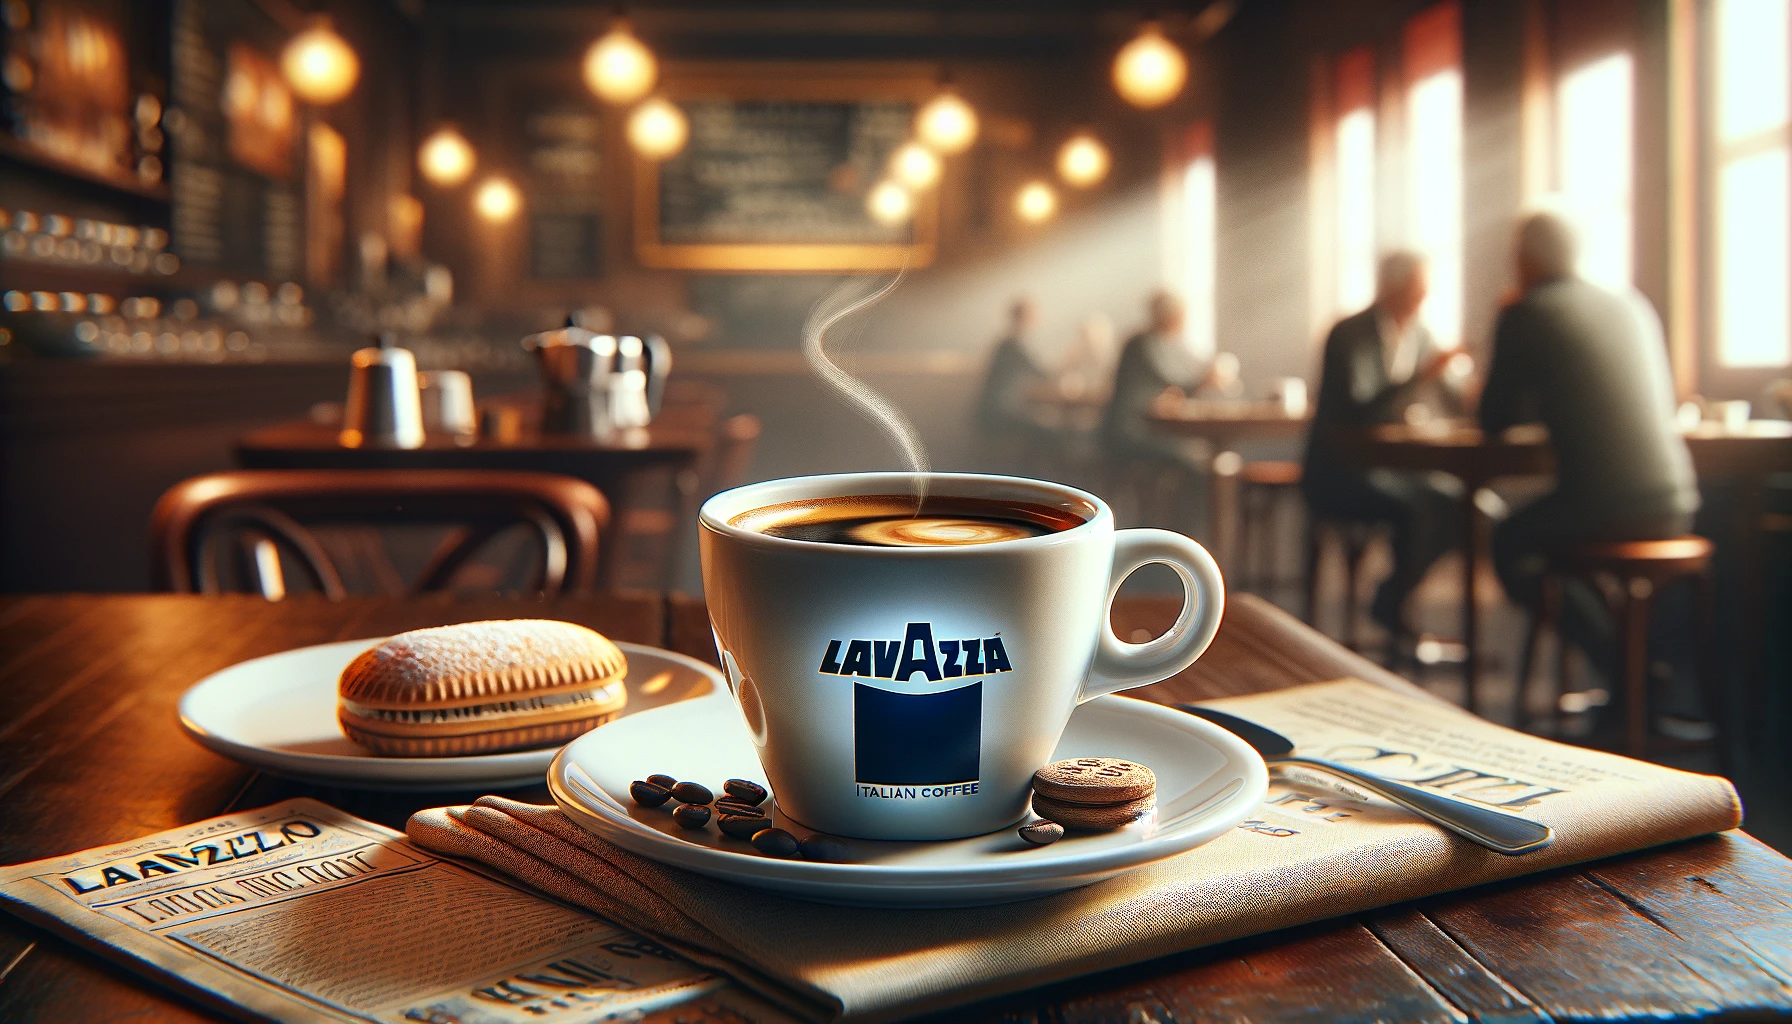 Ce trebuie sa știi despre cafeaua Lavazza - Tu pe care o preferi?